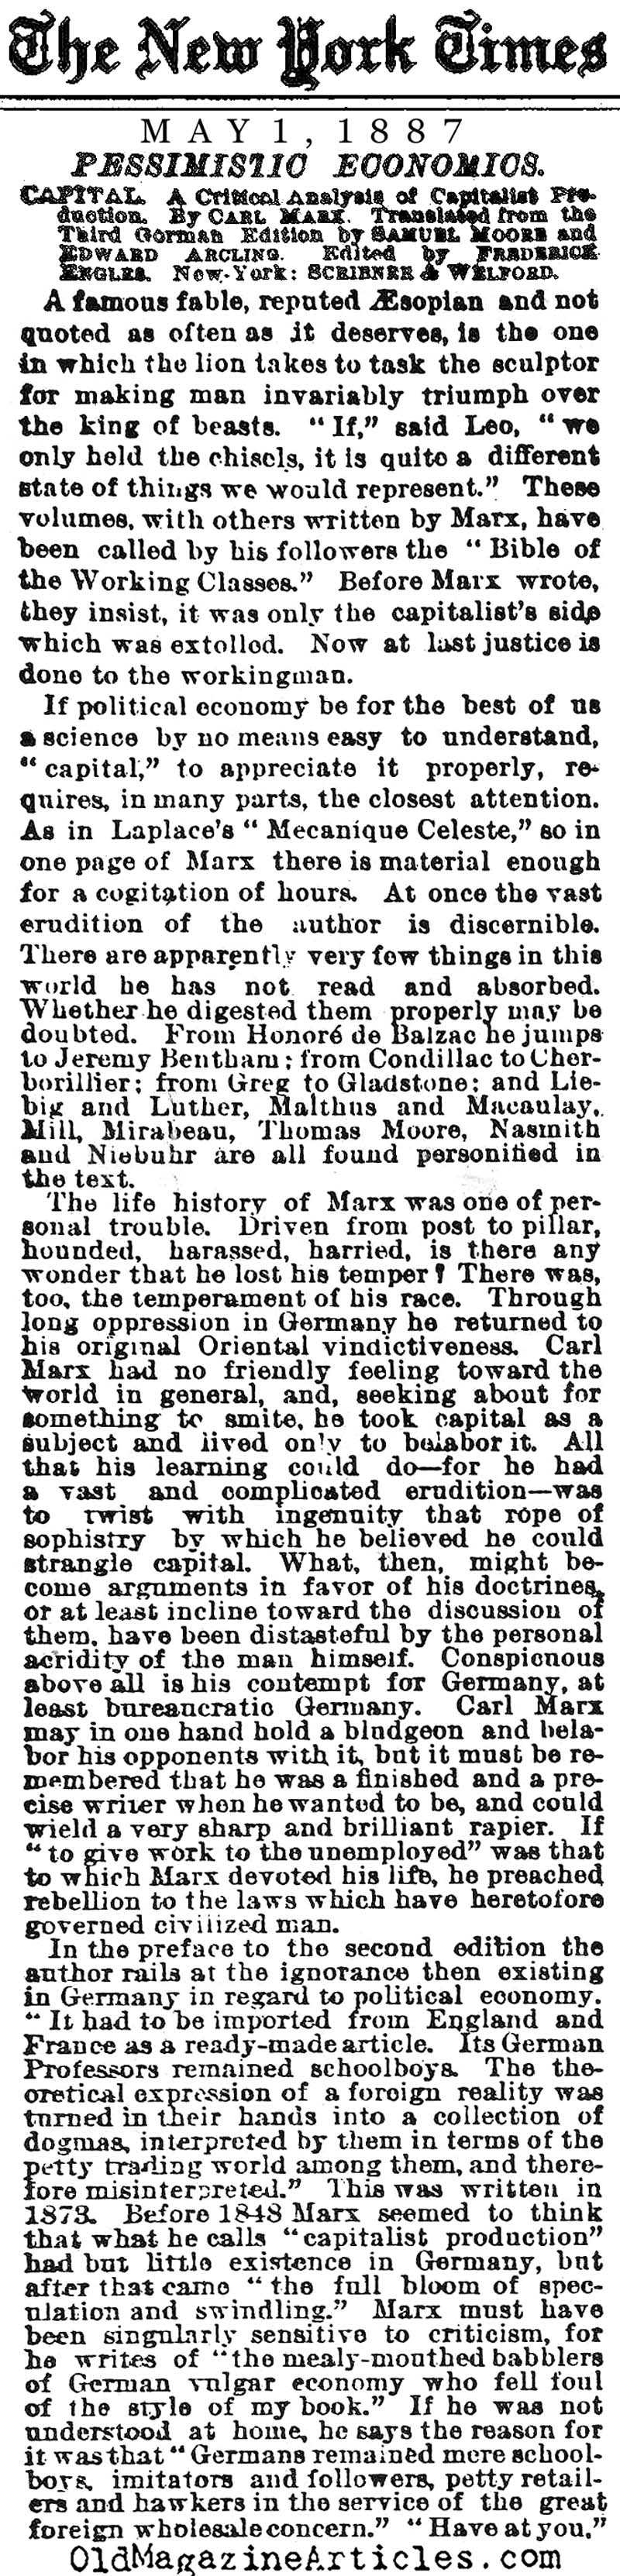 Karl Marx Reviewed (NY Times, 1887)